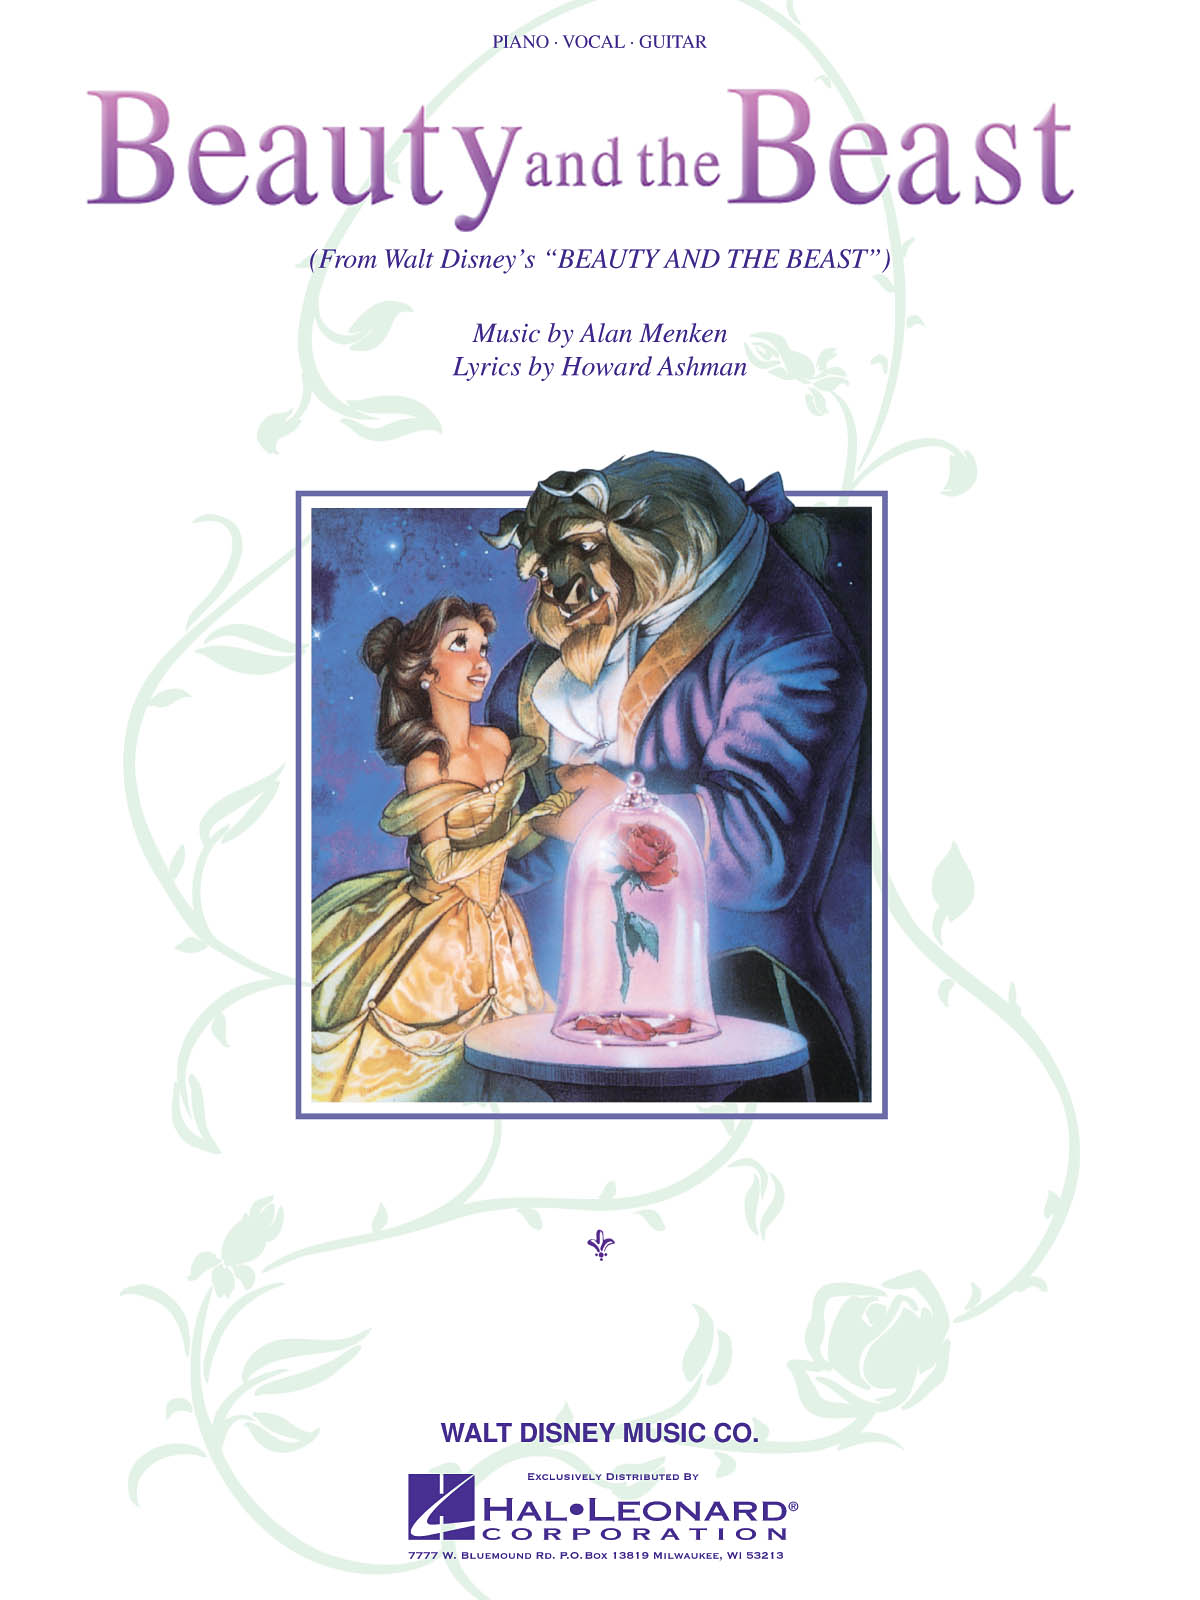 Beauty and the Beast From the Disney Movie - noty pro zpěv, klavír s akordy pro kytaru